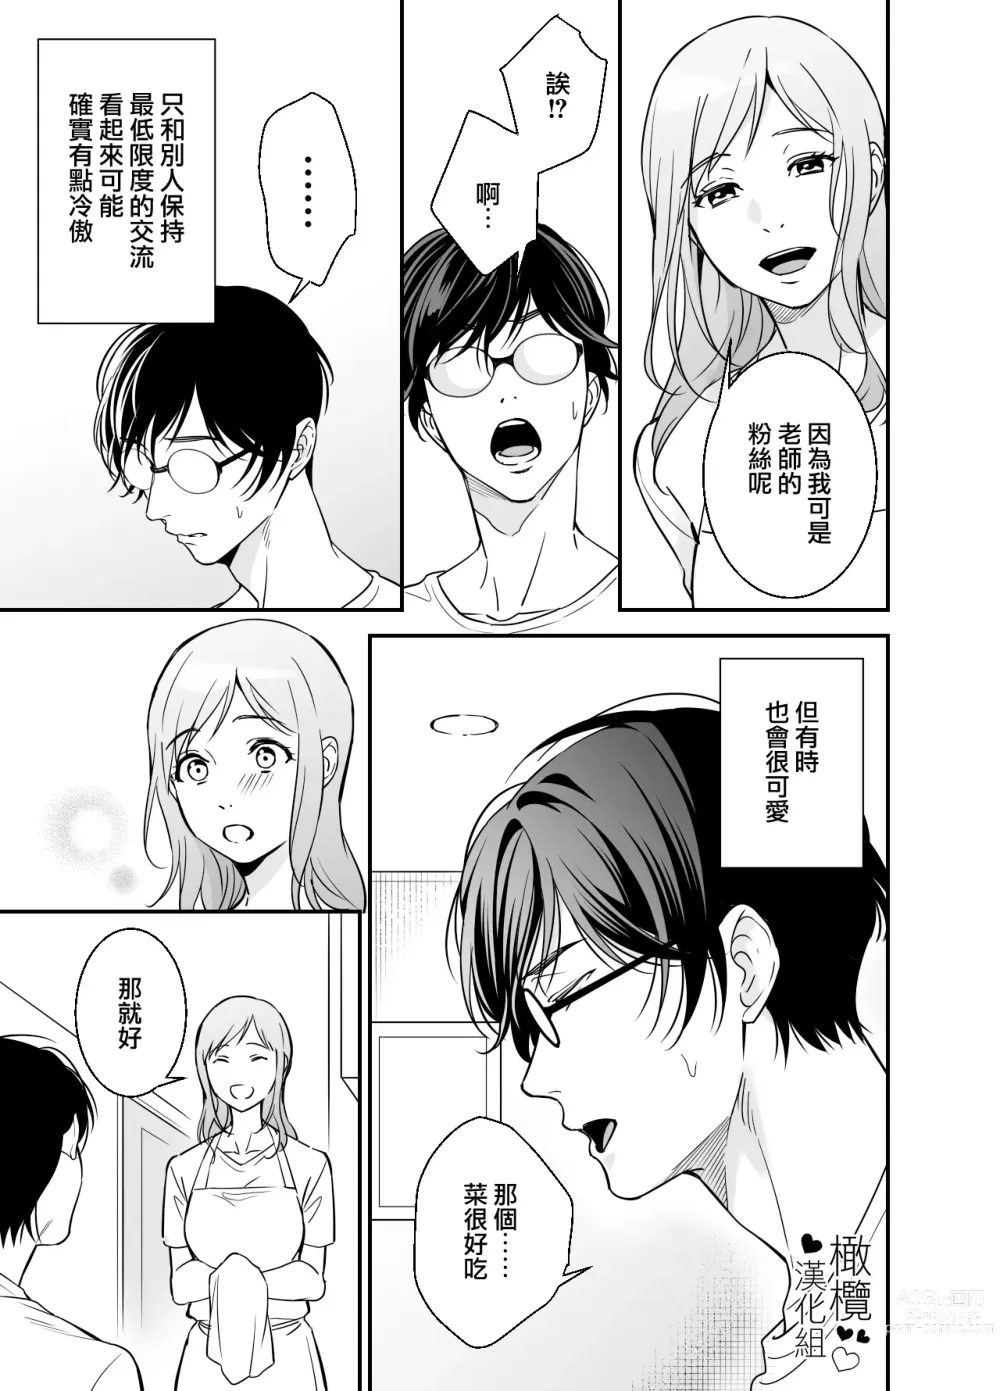 Page 10 of doujinshi 处男小说家和家政妇小姐